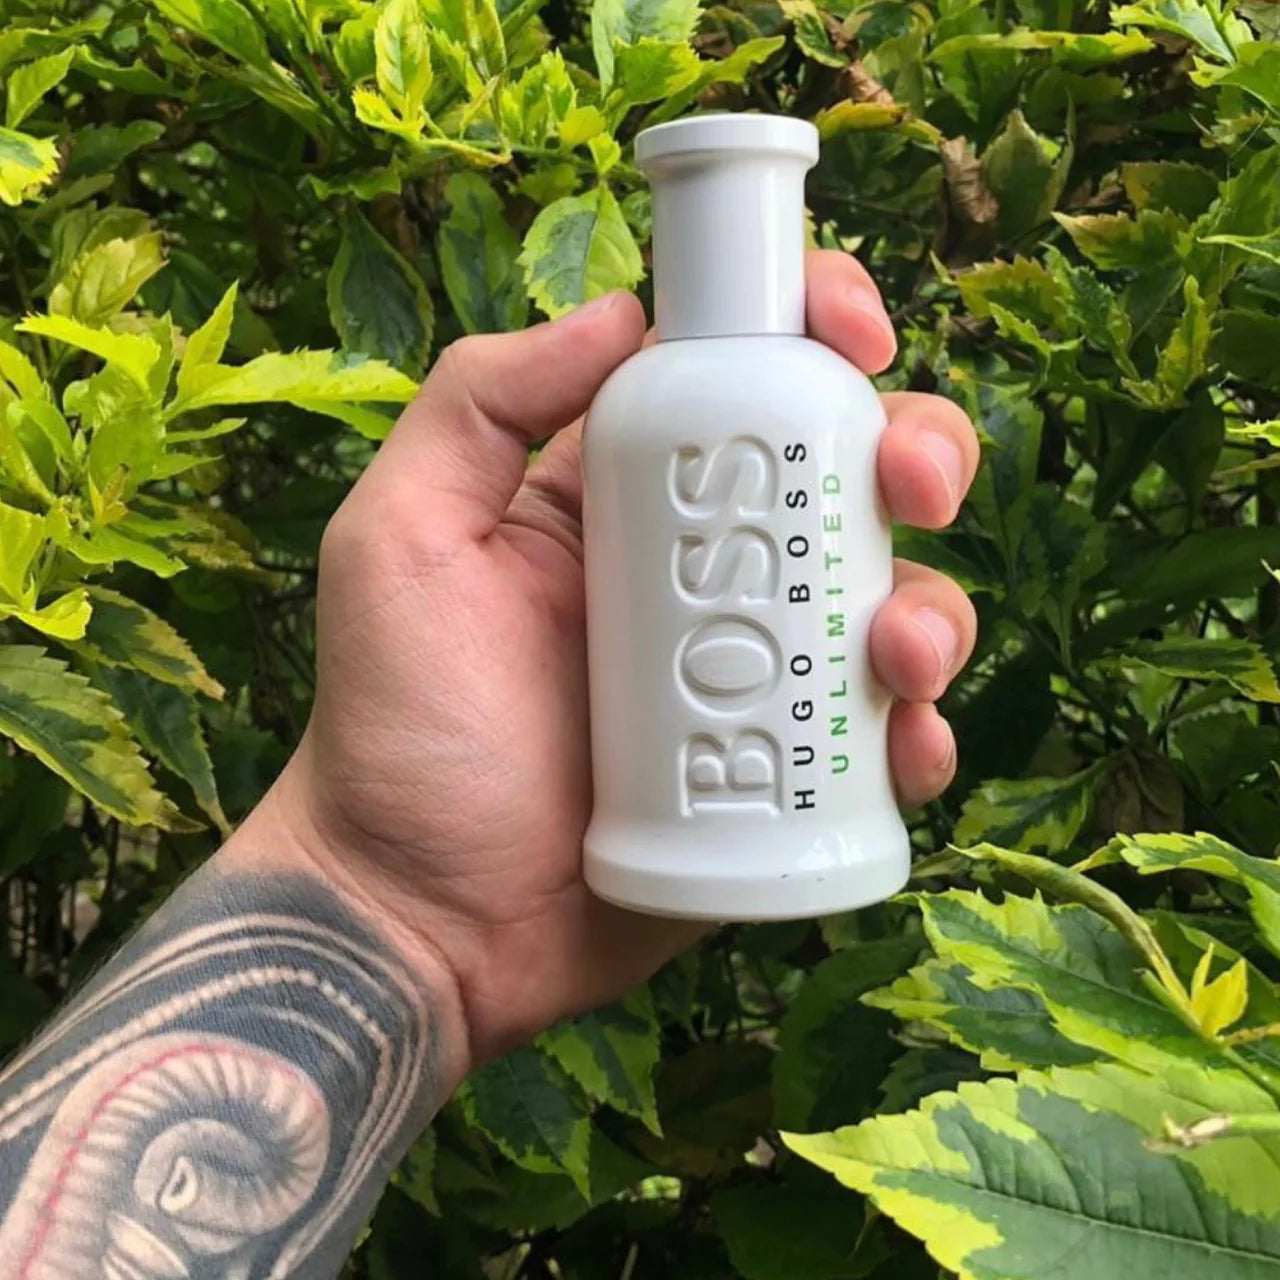 Hugo Boss Bottled Unlimited EDT for men - Perfume Planet 